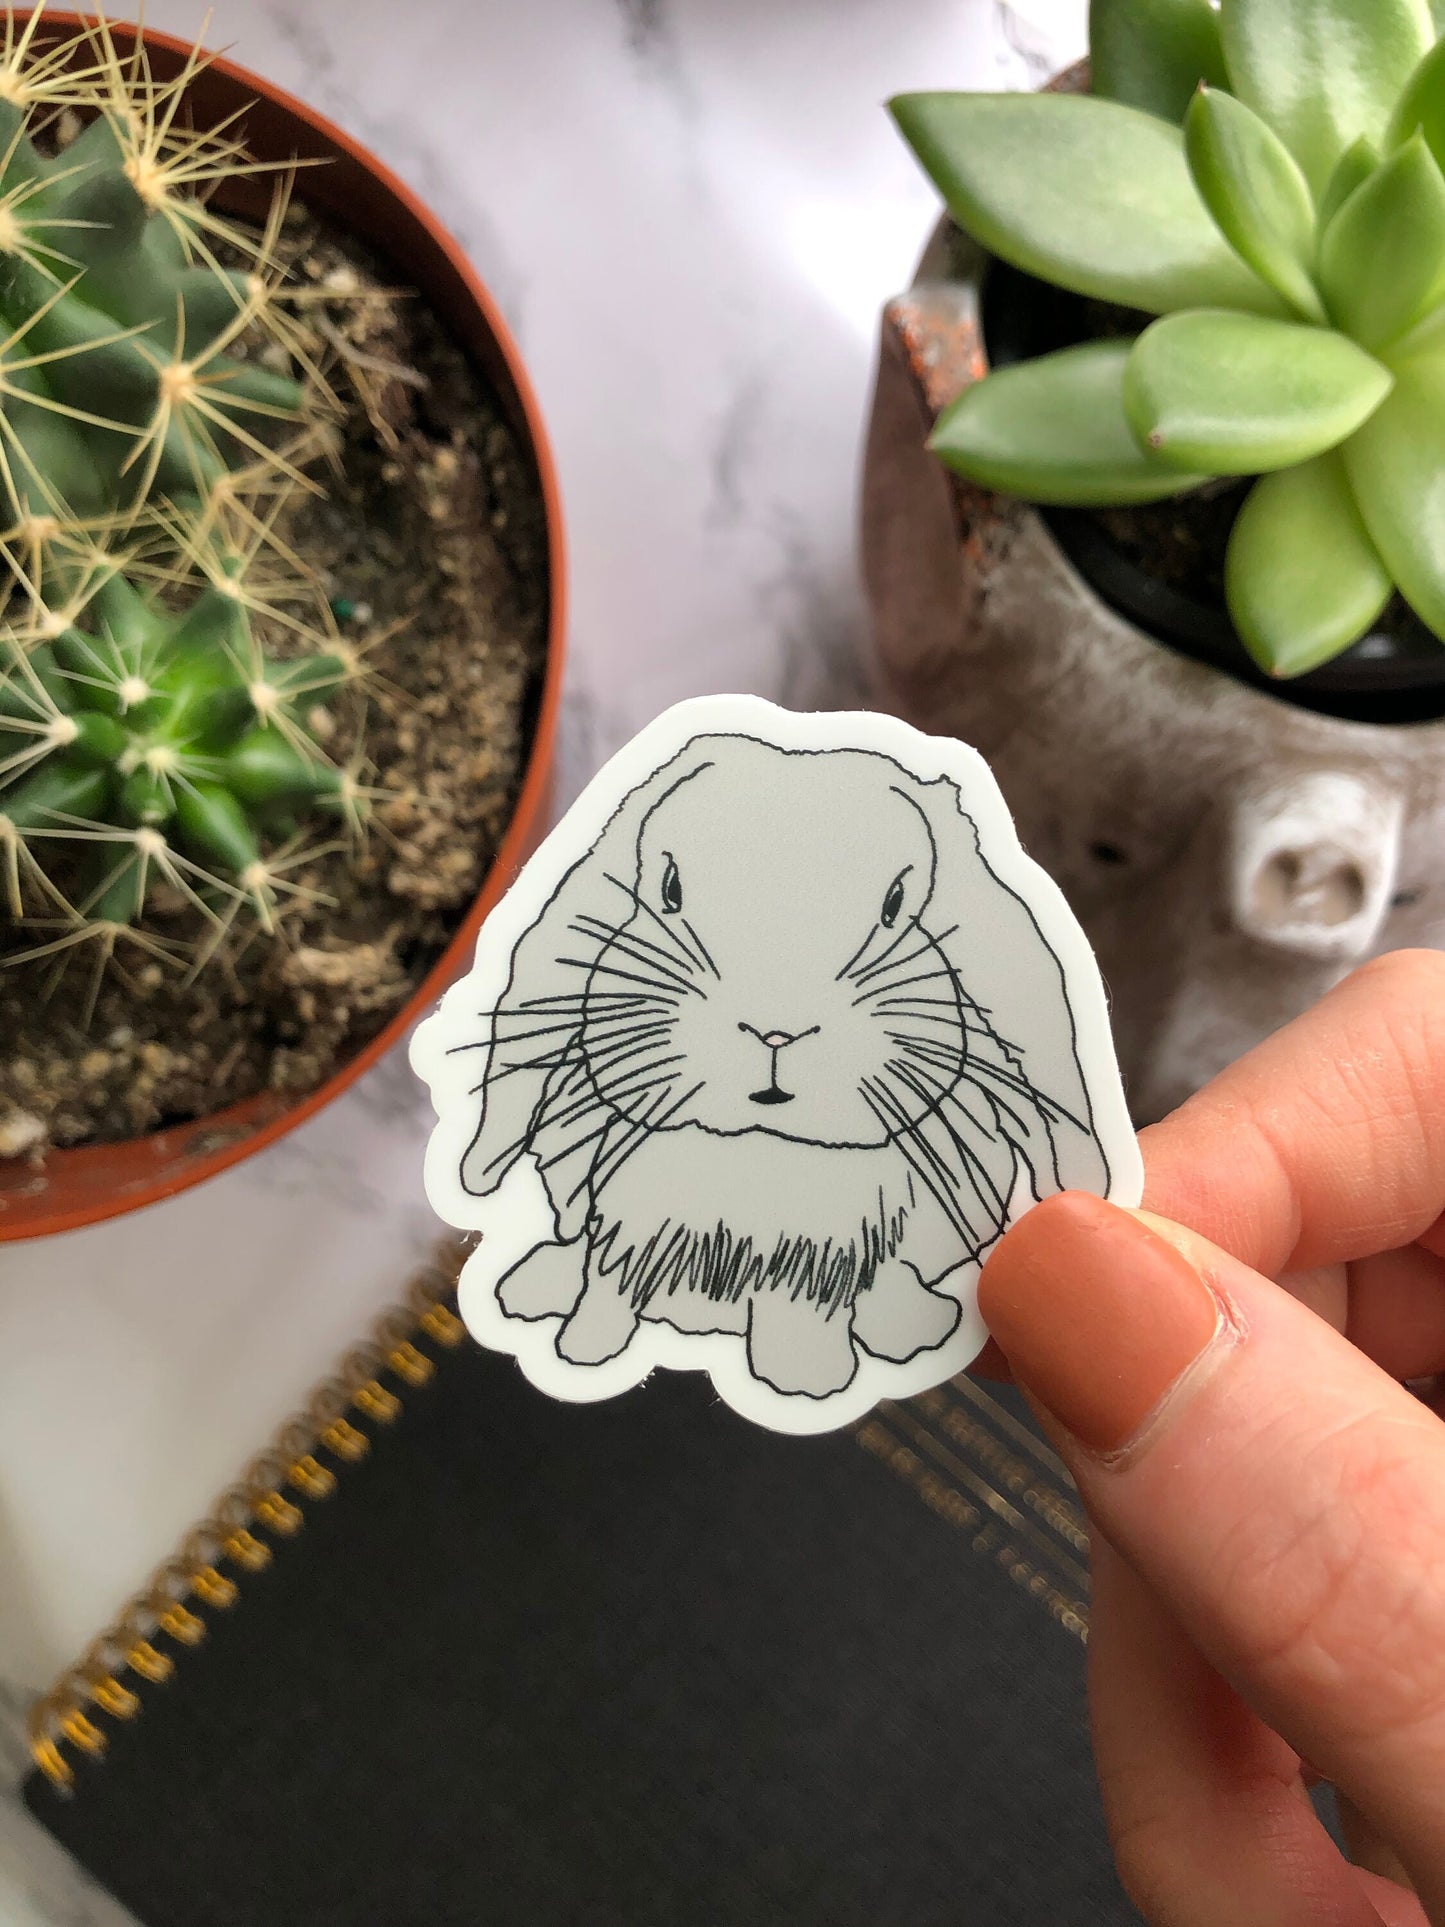 Bunny Sticker